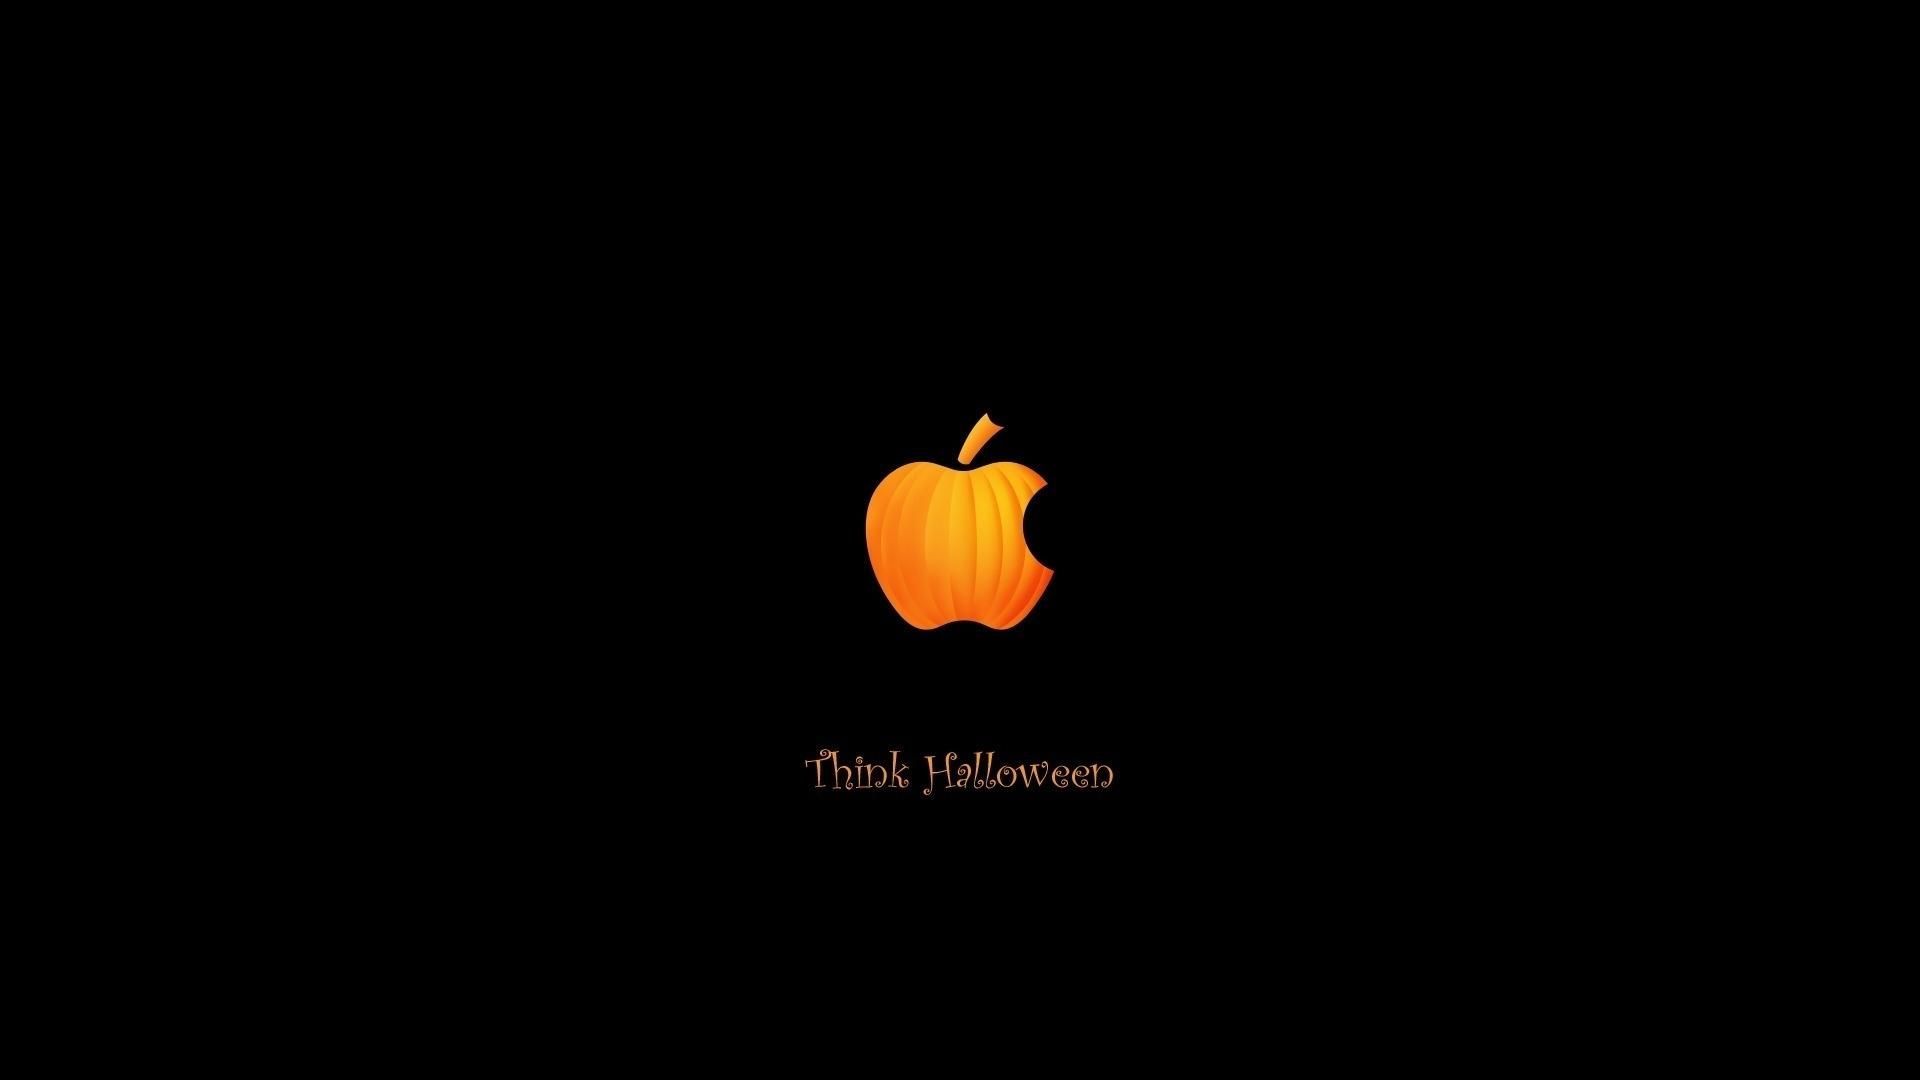 Orange Halloween Apple Logo Wallpaper Wallfinest. HD Wallpaper Range